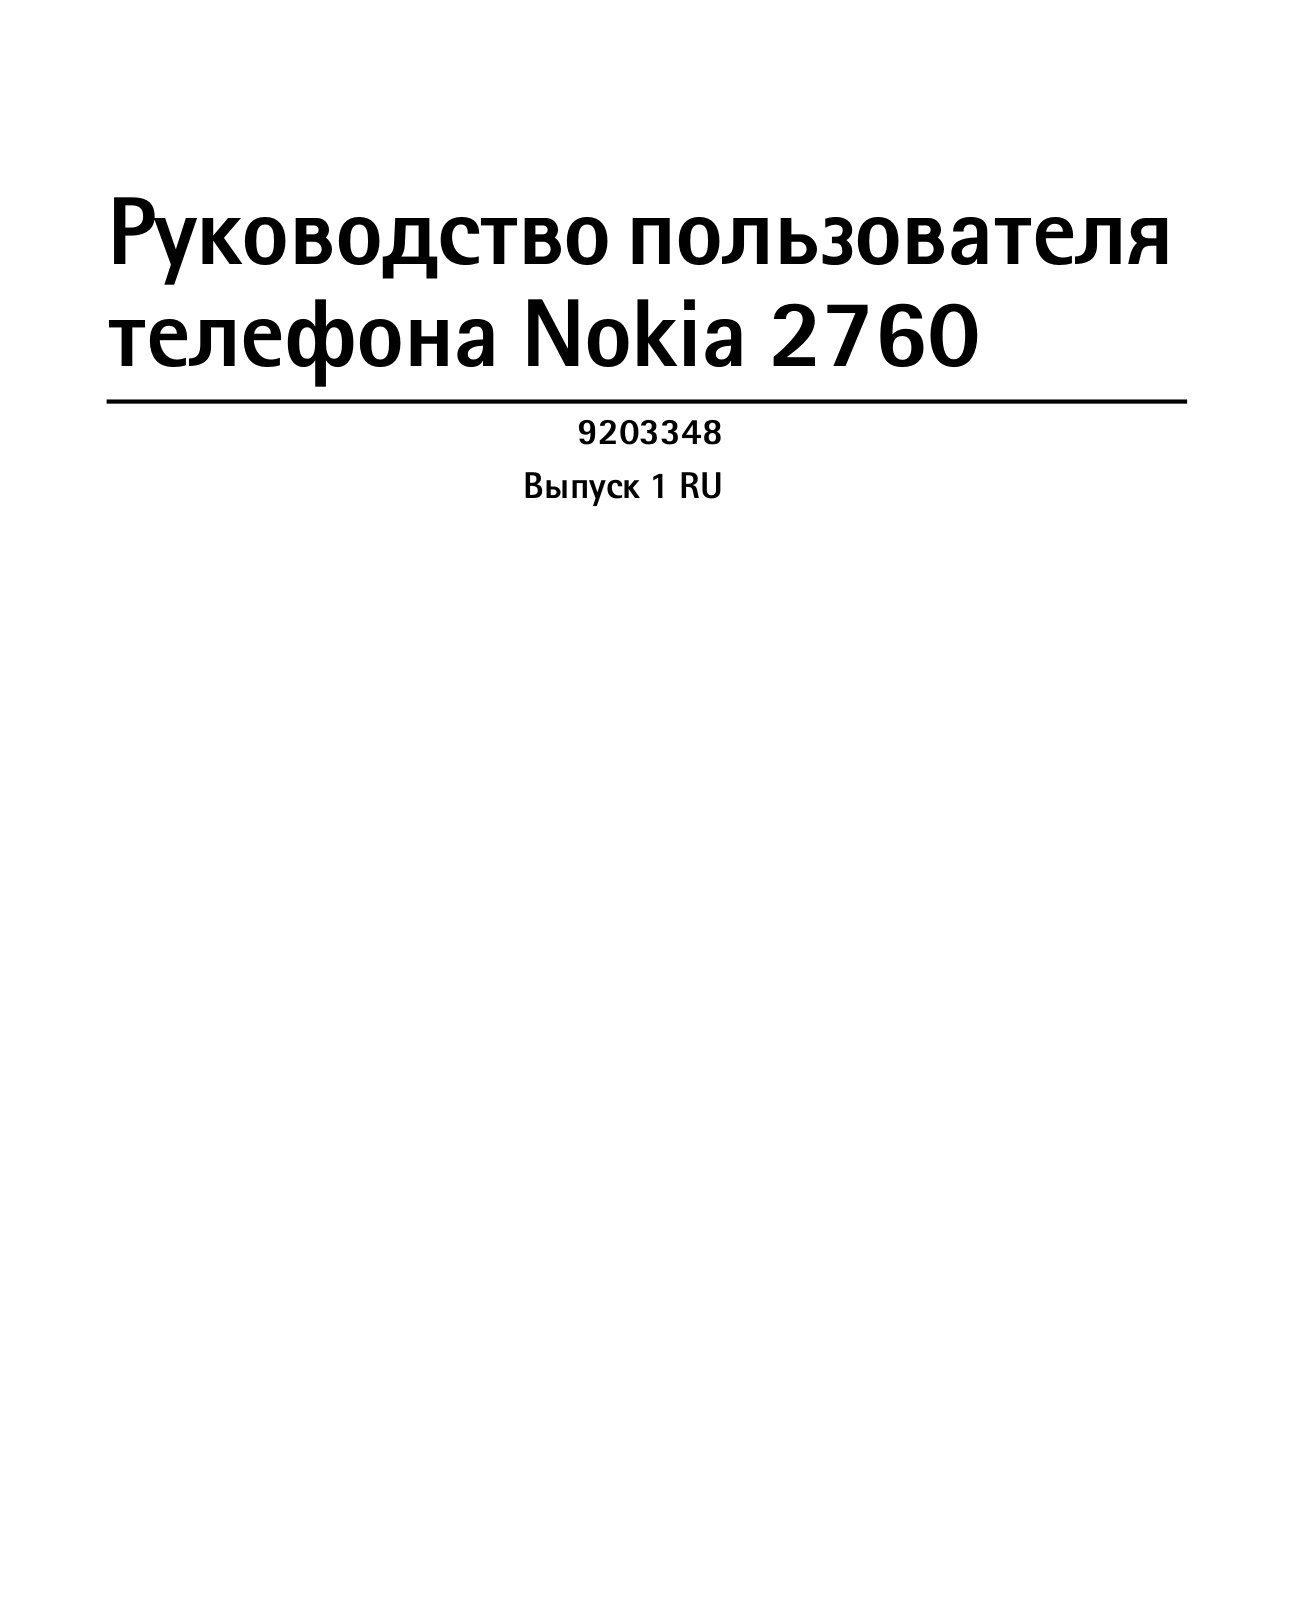 Nokia 2760 velvet red User Manual